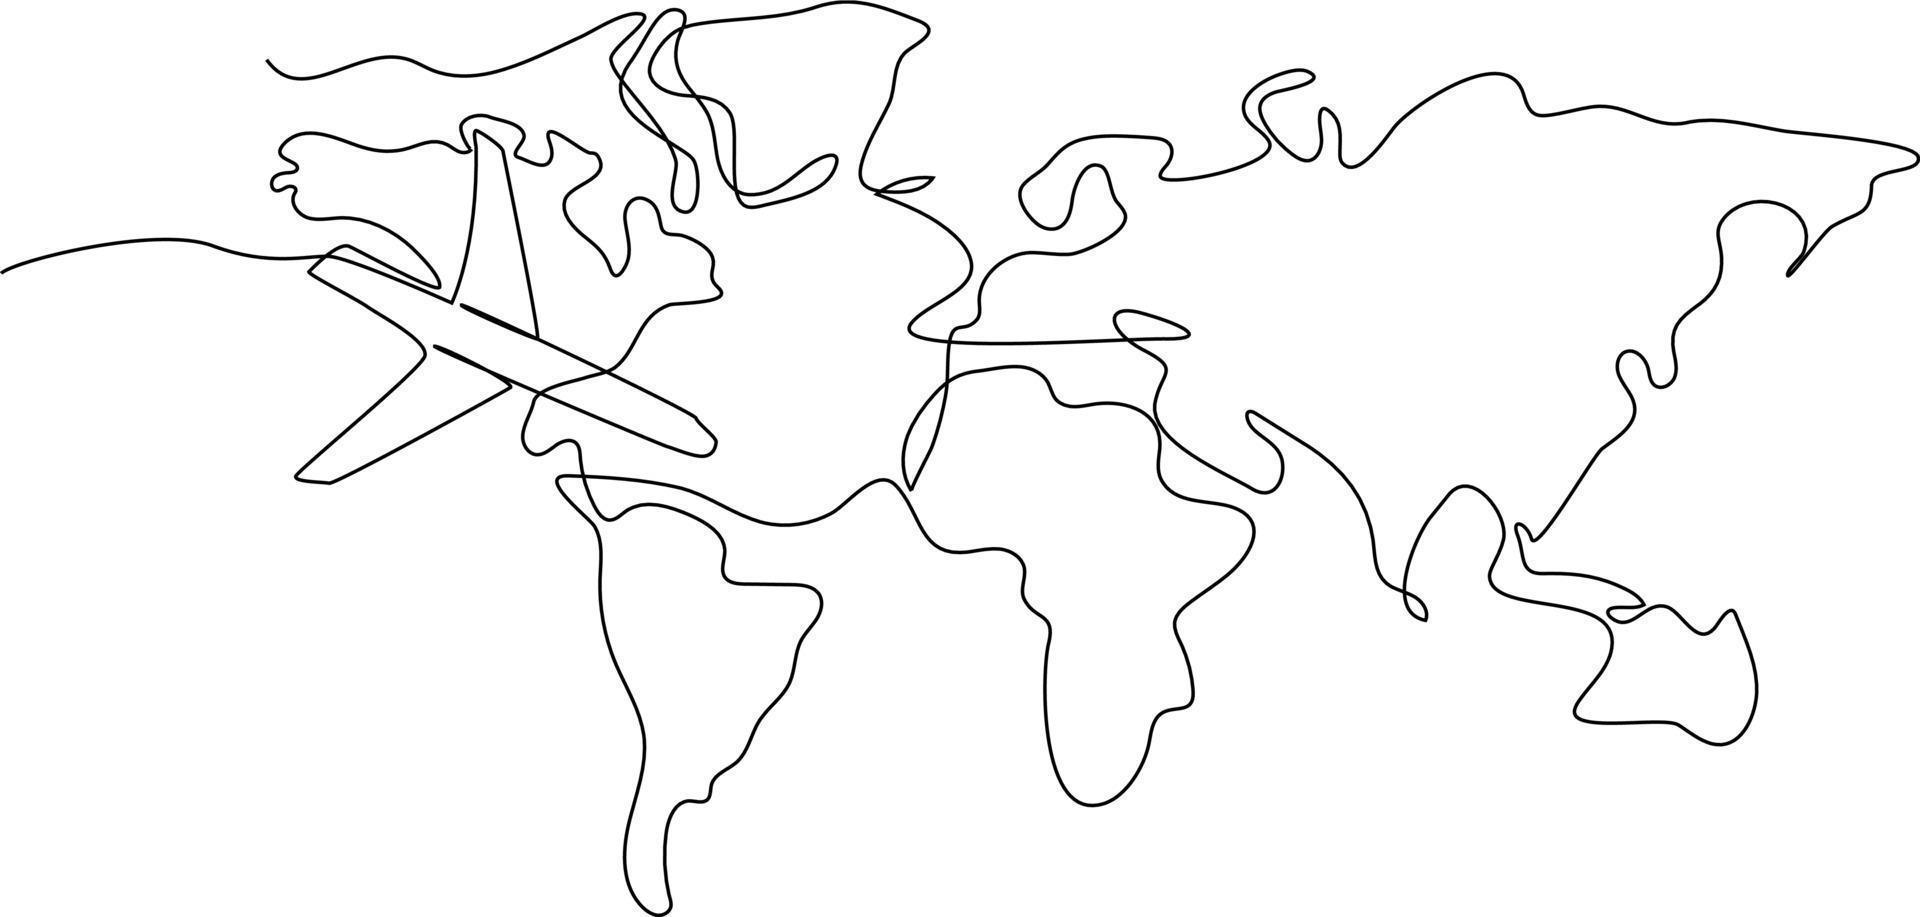 kontinuierlich einer Linie Zeichnung Welt Reise Karte und Luft Ebene. Welt Reisender Konzept. Single Linie zeichnen Design Vektor Grafik Illustration.